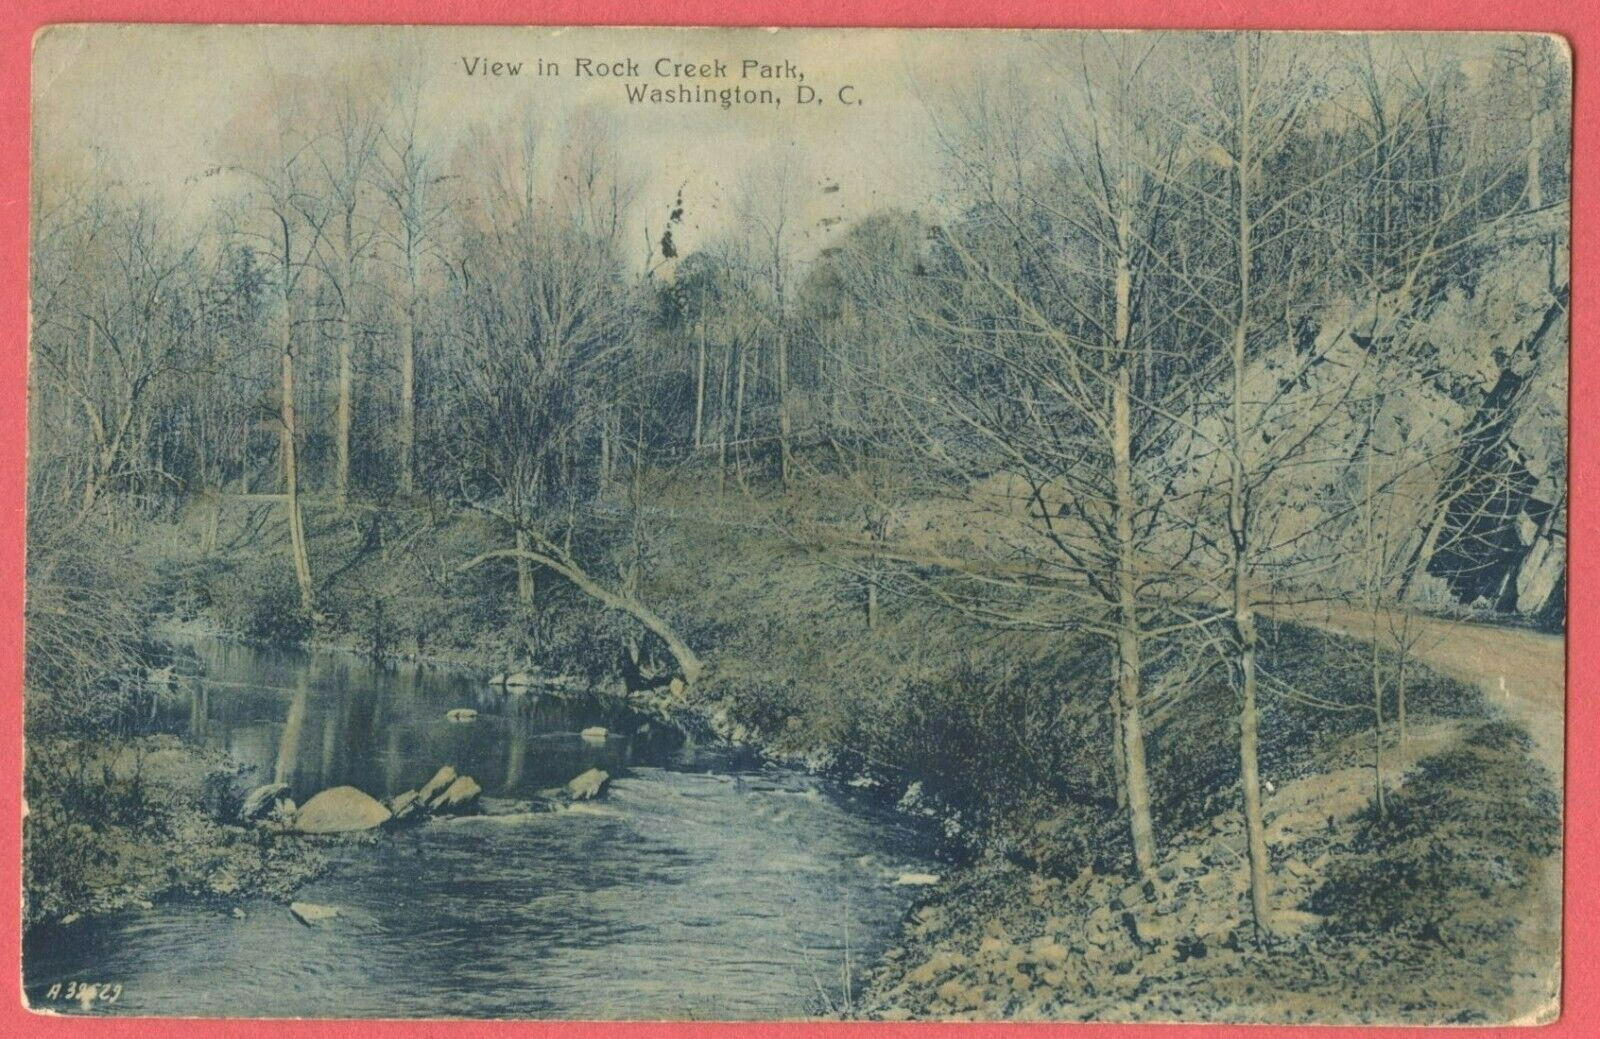 View in Rock Creek Park 1908 Washington DC Postcard